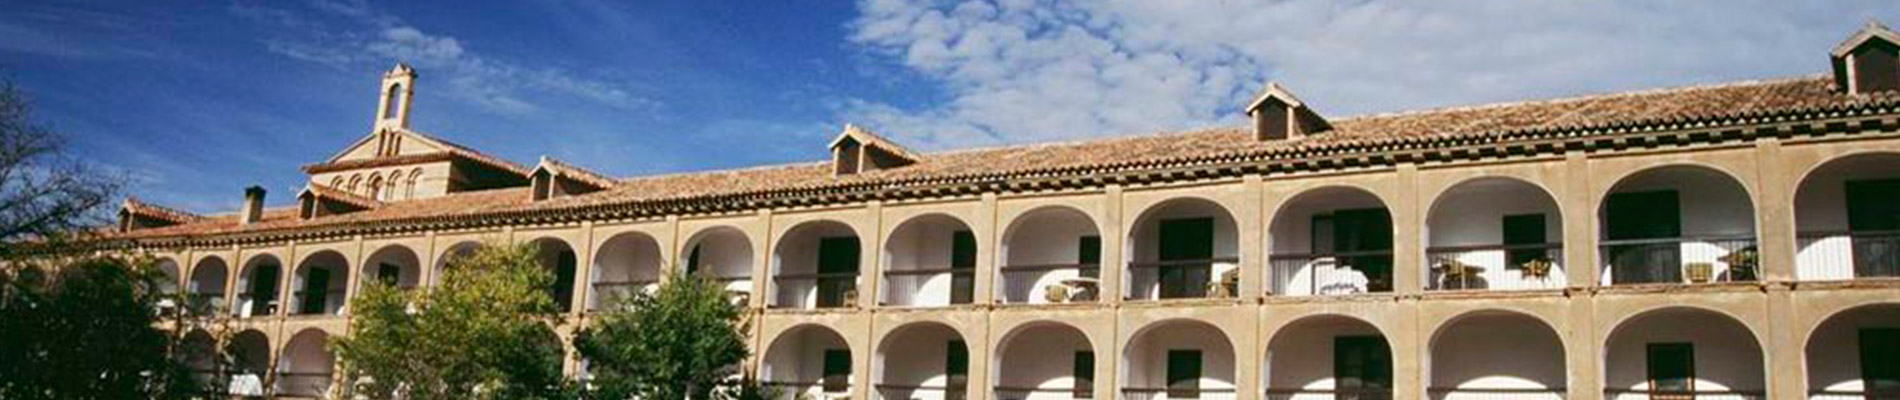 Monasterio de Piedra Hotel